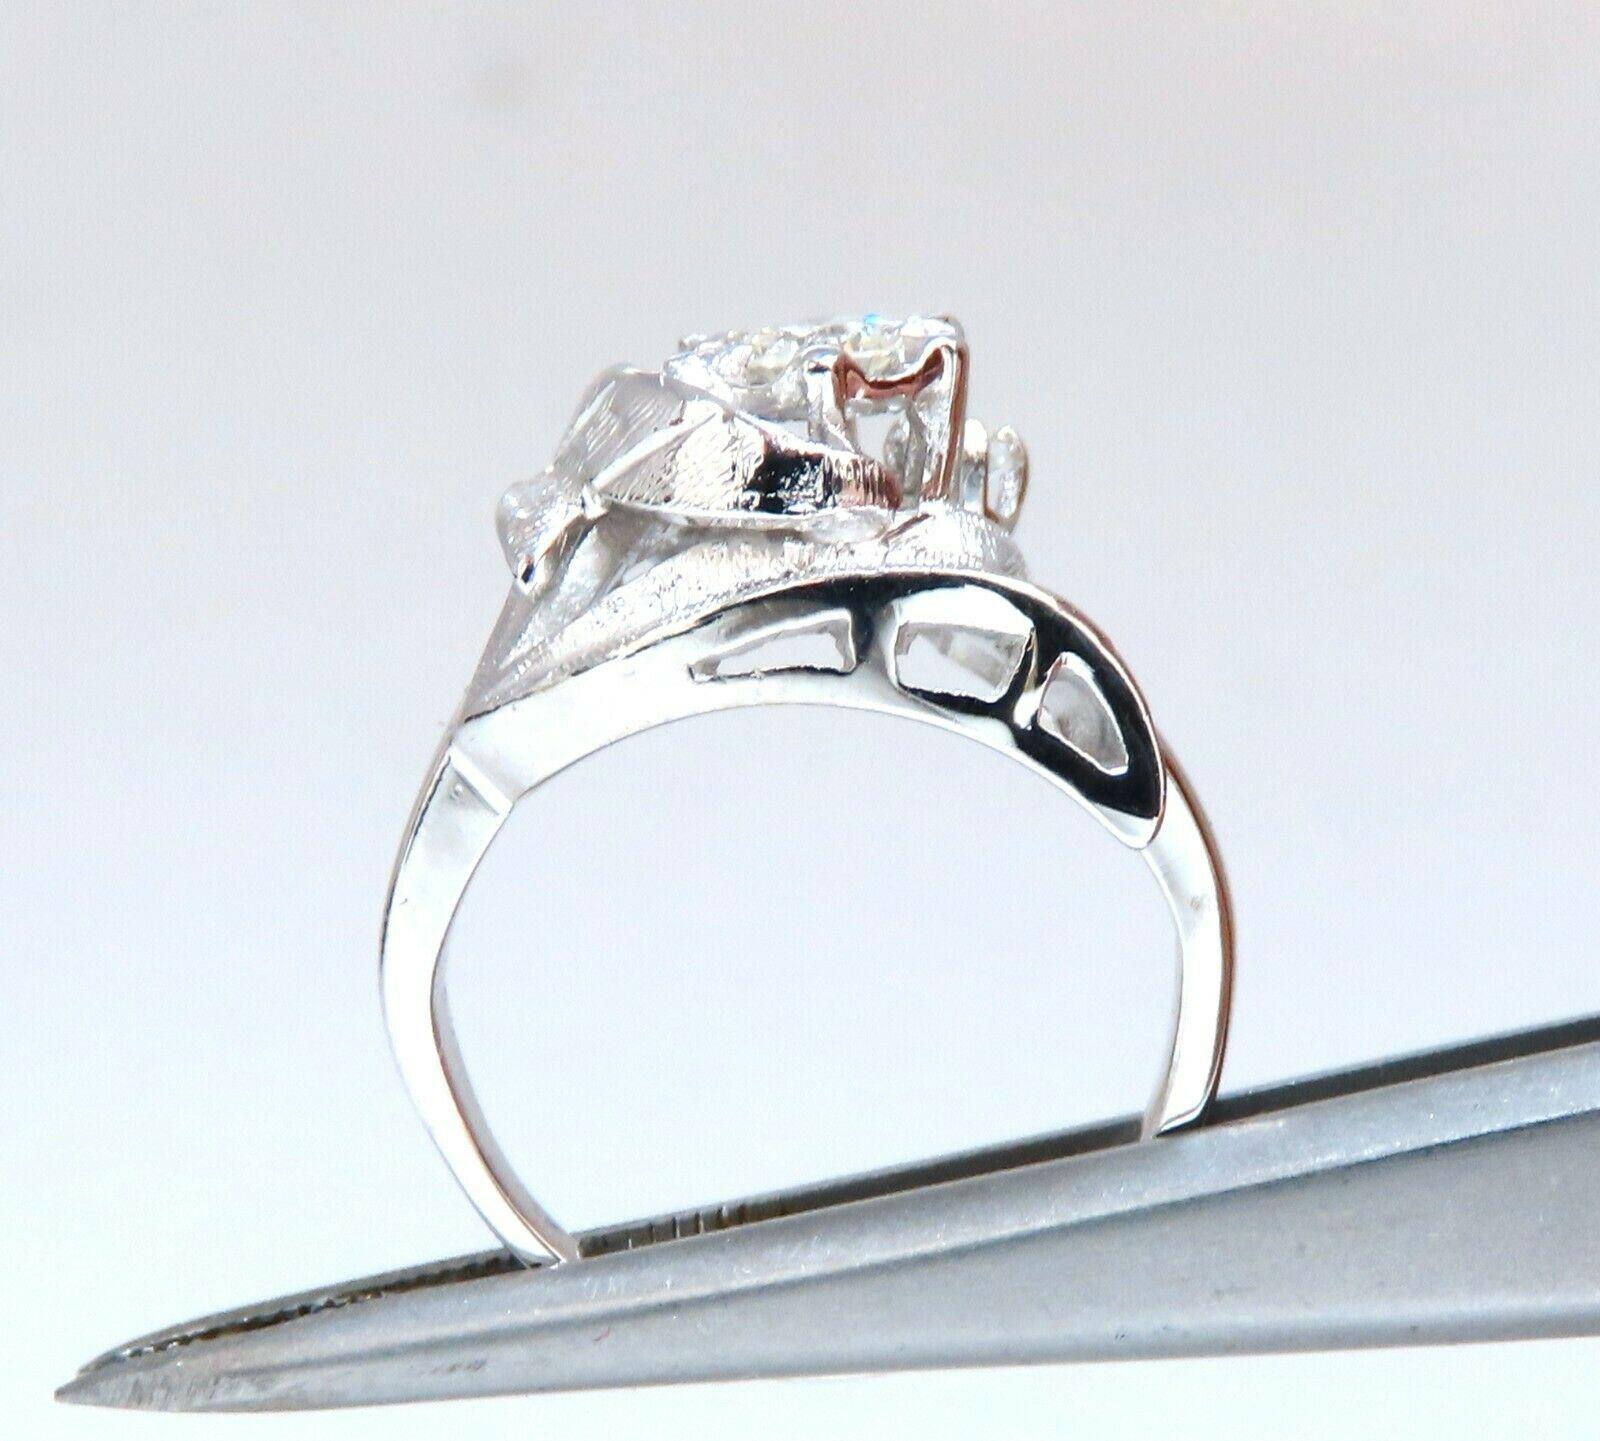 Viktorianische Wiedergeburt Deco

.20ct Ring mit natürlichen Diamanten.

Einfach geschliffener Brillant Rund: 3.6mm Durchmesser

VS2 Saubere Klarheit

H-Farbe

14Kt. Weißgold

Ringgröße: 3,5

Ring Maße:

11mm breit

7.2mm Tiefe

gewicht des Rings: